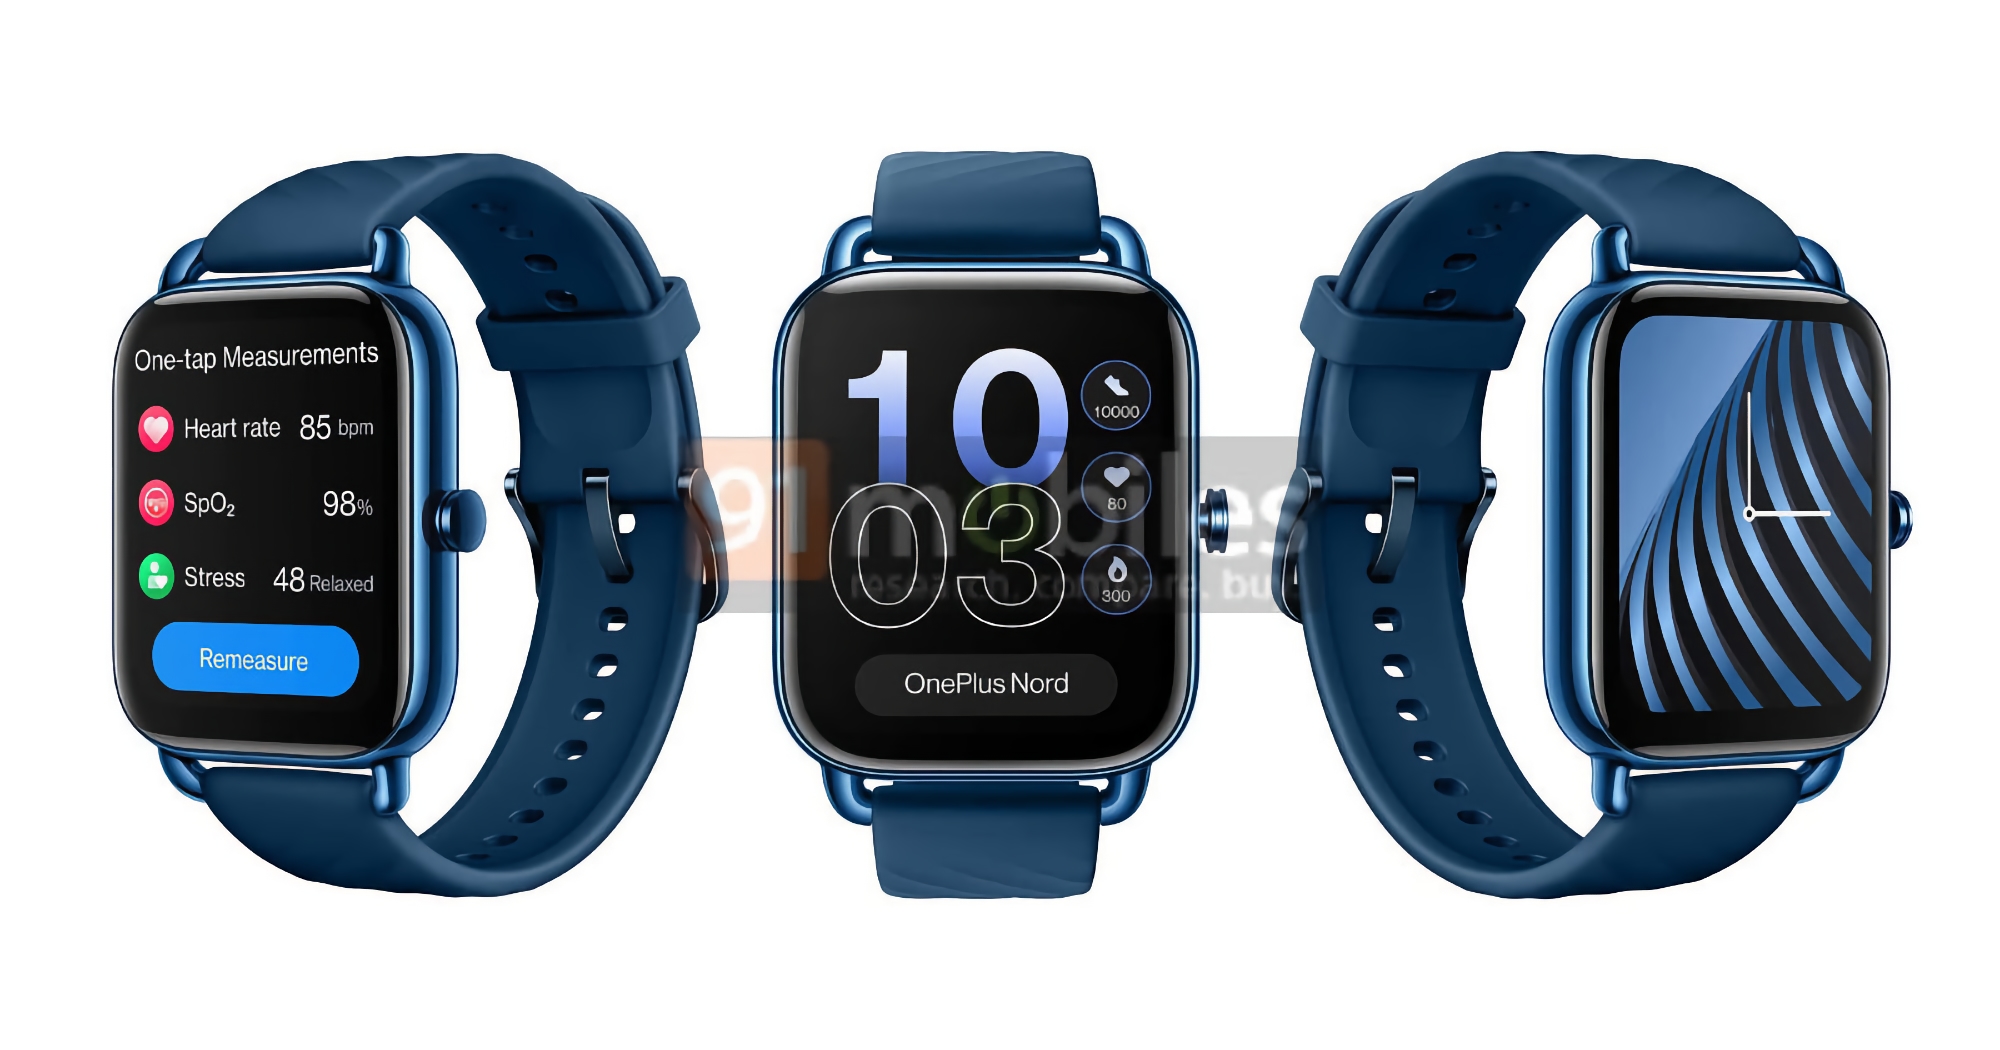 La OnePlus Nord Watch apparaît sur de nouveaux rendus : smartwatch avec écran AMOLED, Bluetooth 5.2 et autonomie jusqu'à 10 jours